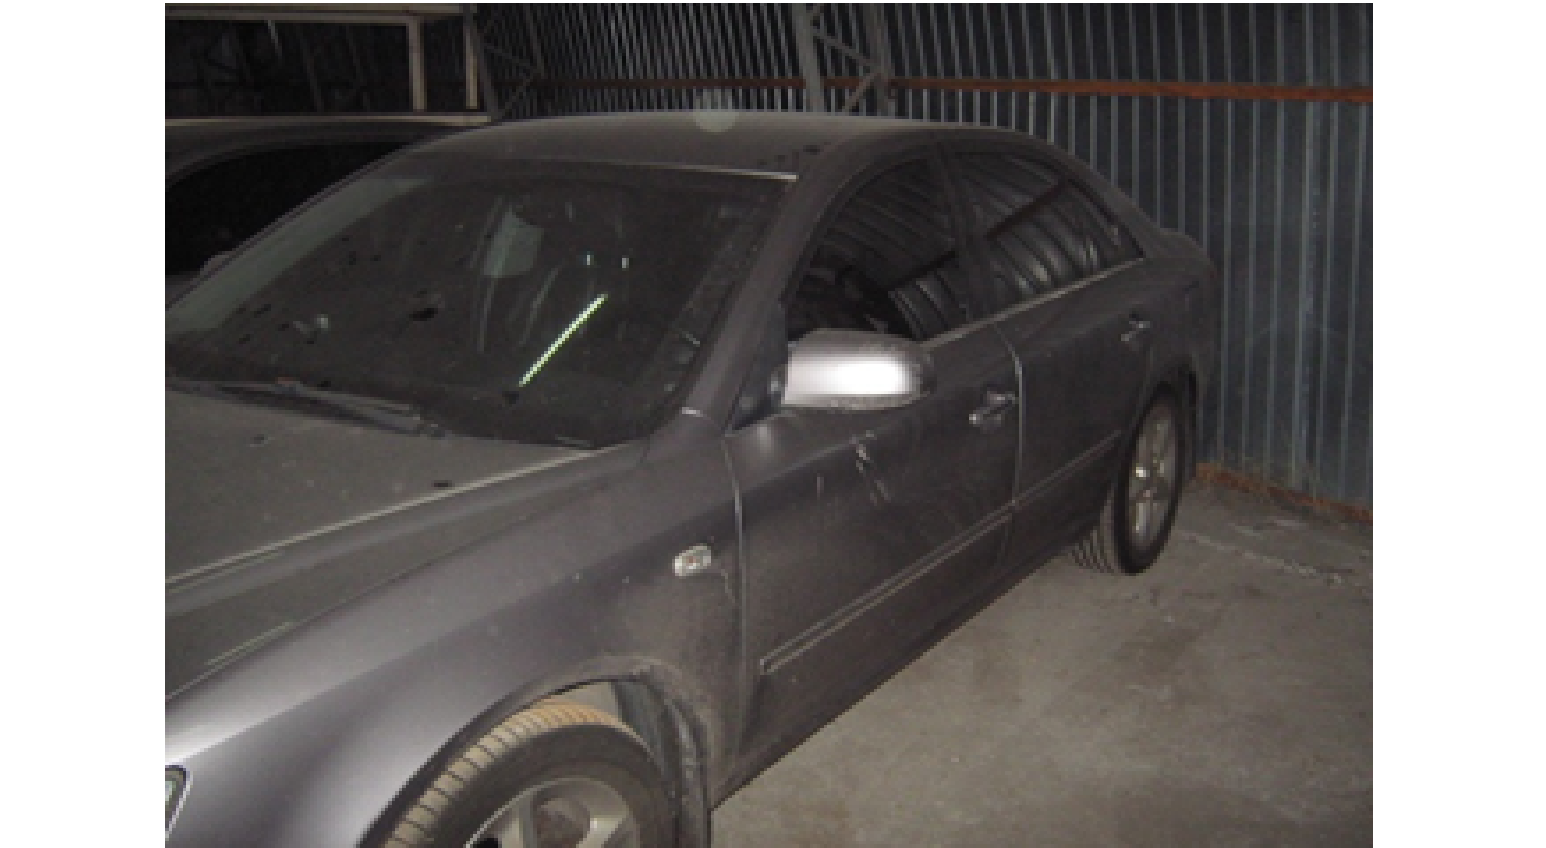 Автомобіль HYUNDAI SONATA, державний номер АЕ7672ВН, рік випуску 2006, об'єм двигуна 2,4, номер кузова KMHEU41CP7A300702.Комплект ковриків салону ,Навігаційний прилад Nuvi30 Основні засоби у кількості 14 шт